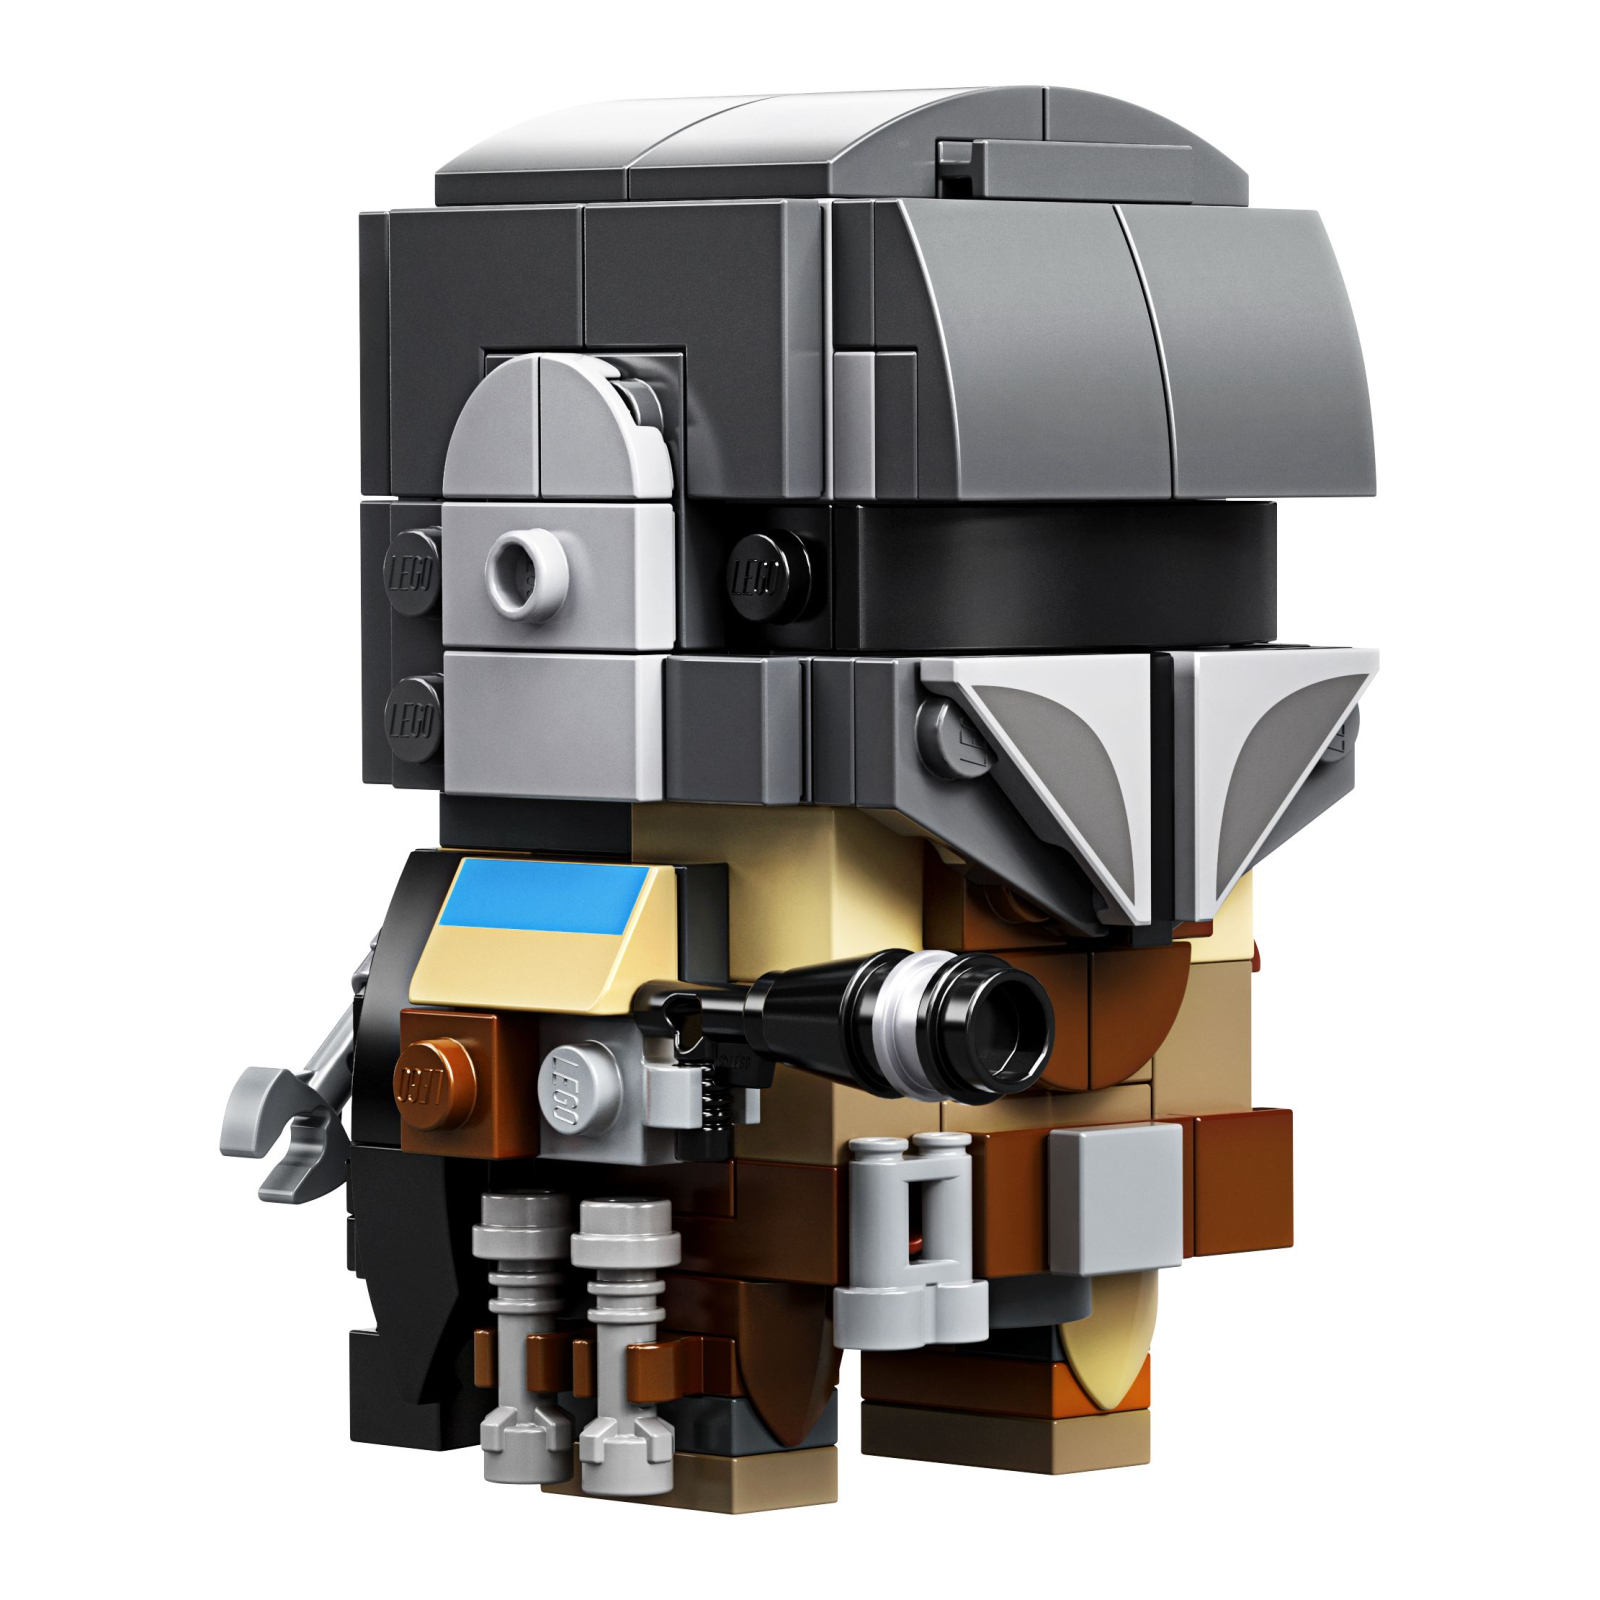 Конструктор LEGO Star Wars Мандалорец и малыш 295 деталей (75317) изображение 7